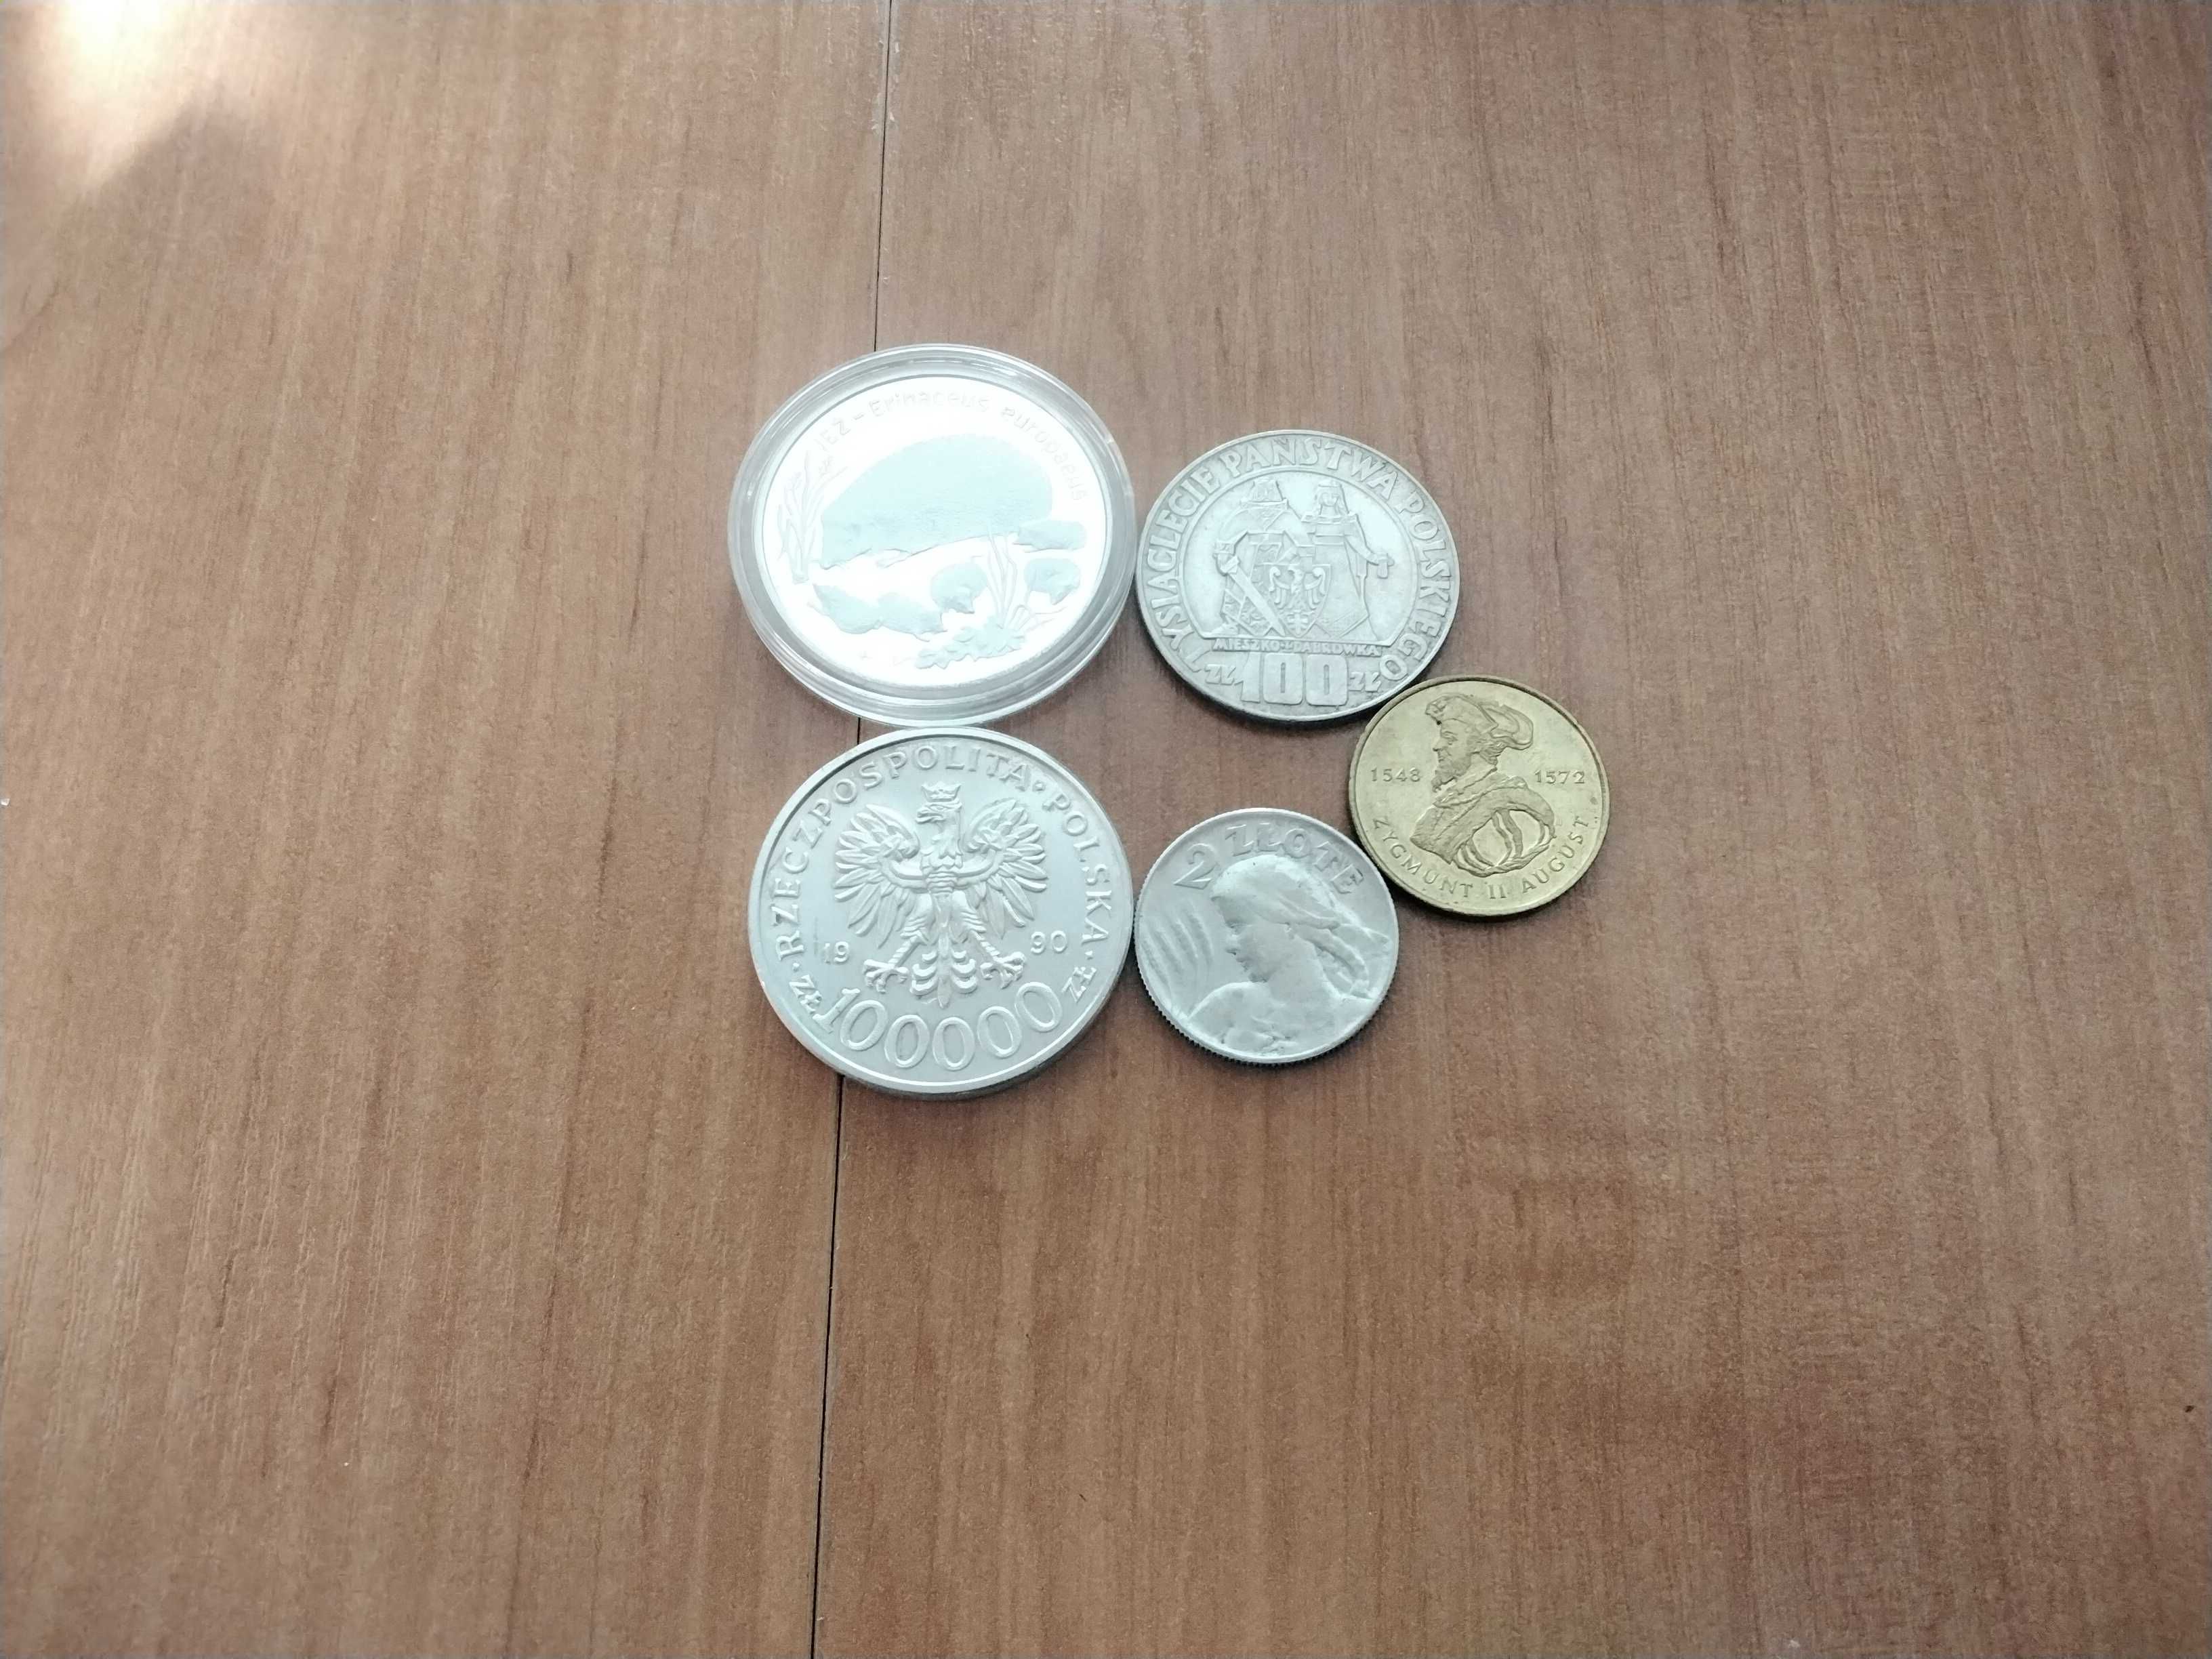 Monety polskie srebrne i dwuzłotowe GN